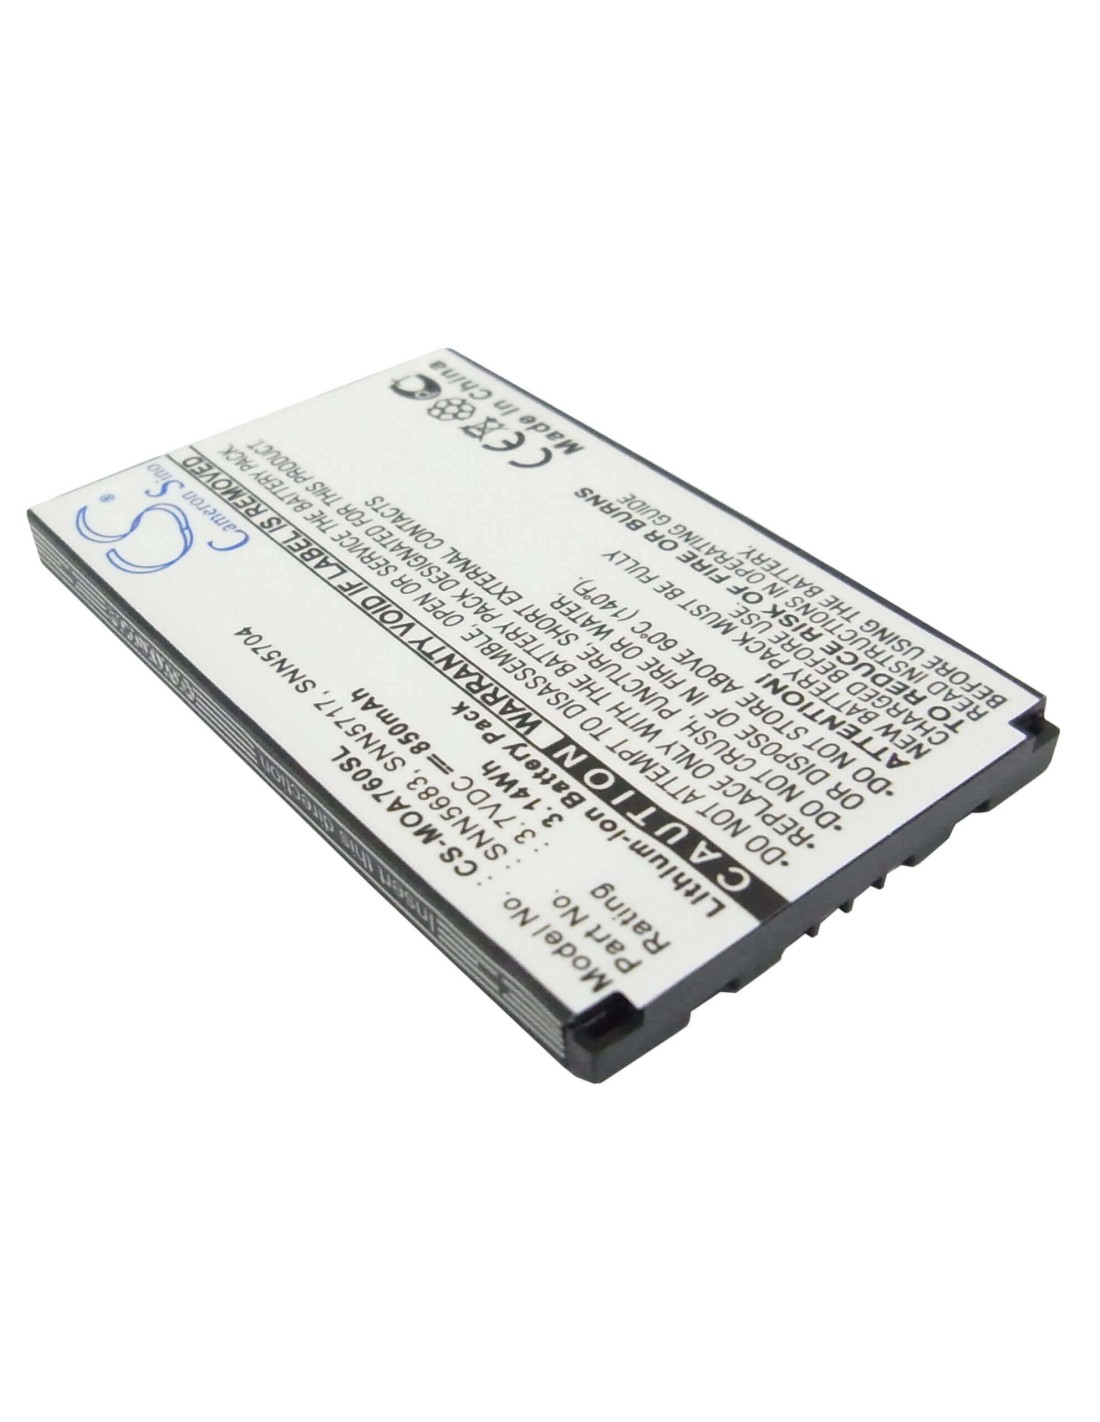 Battery for Motorola A760, V300, V400 3.7V, 850mAh - 3.15Wh